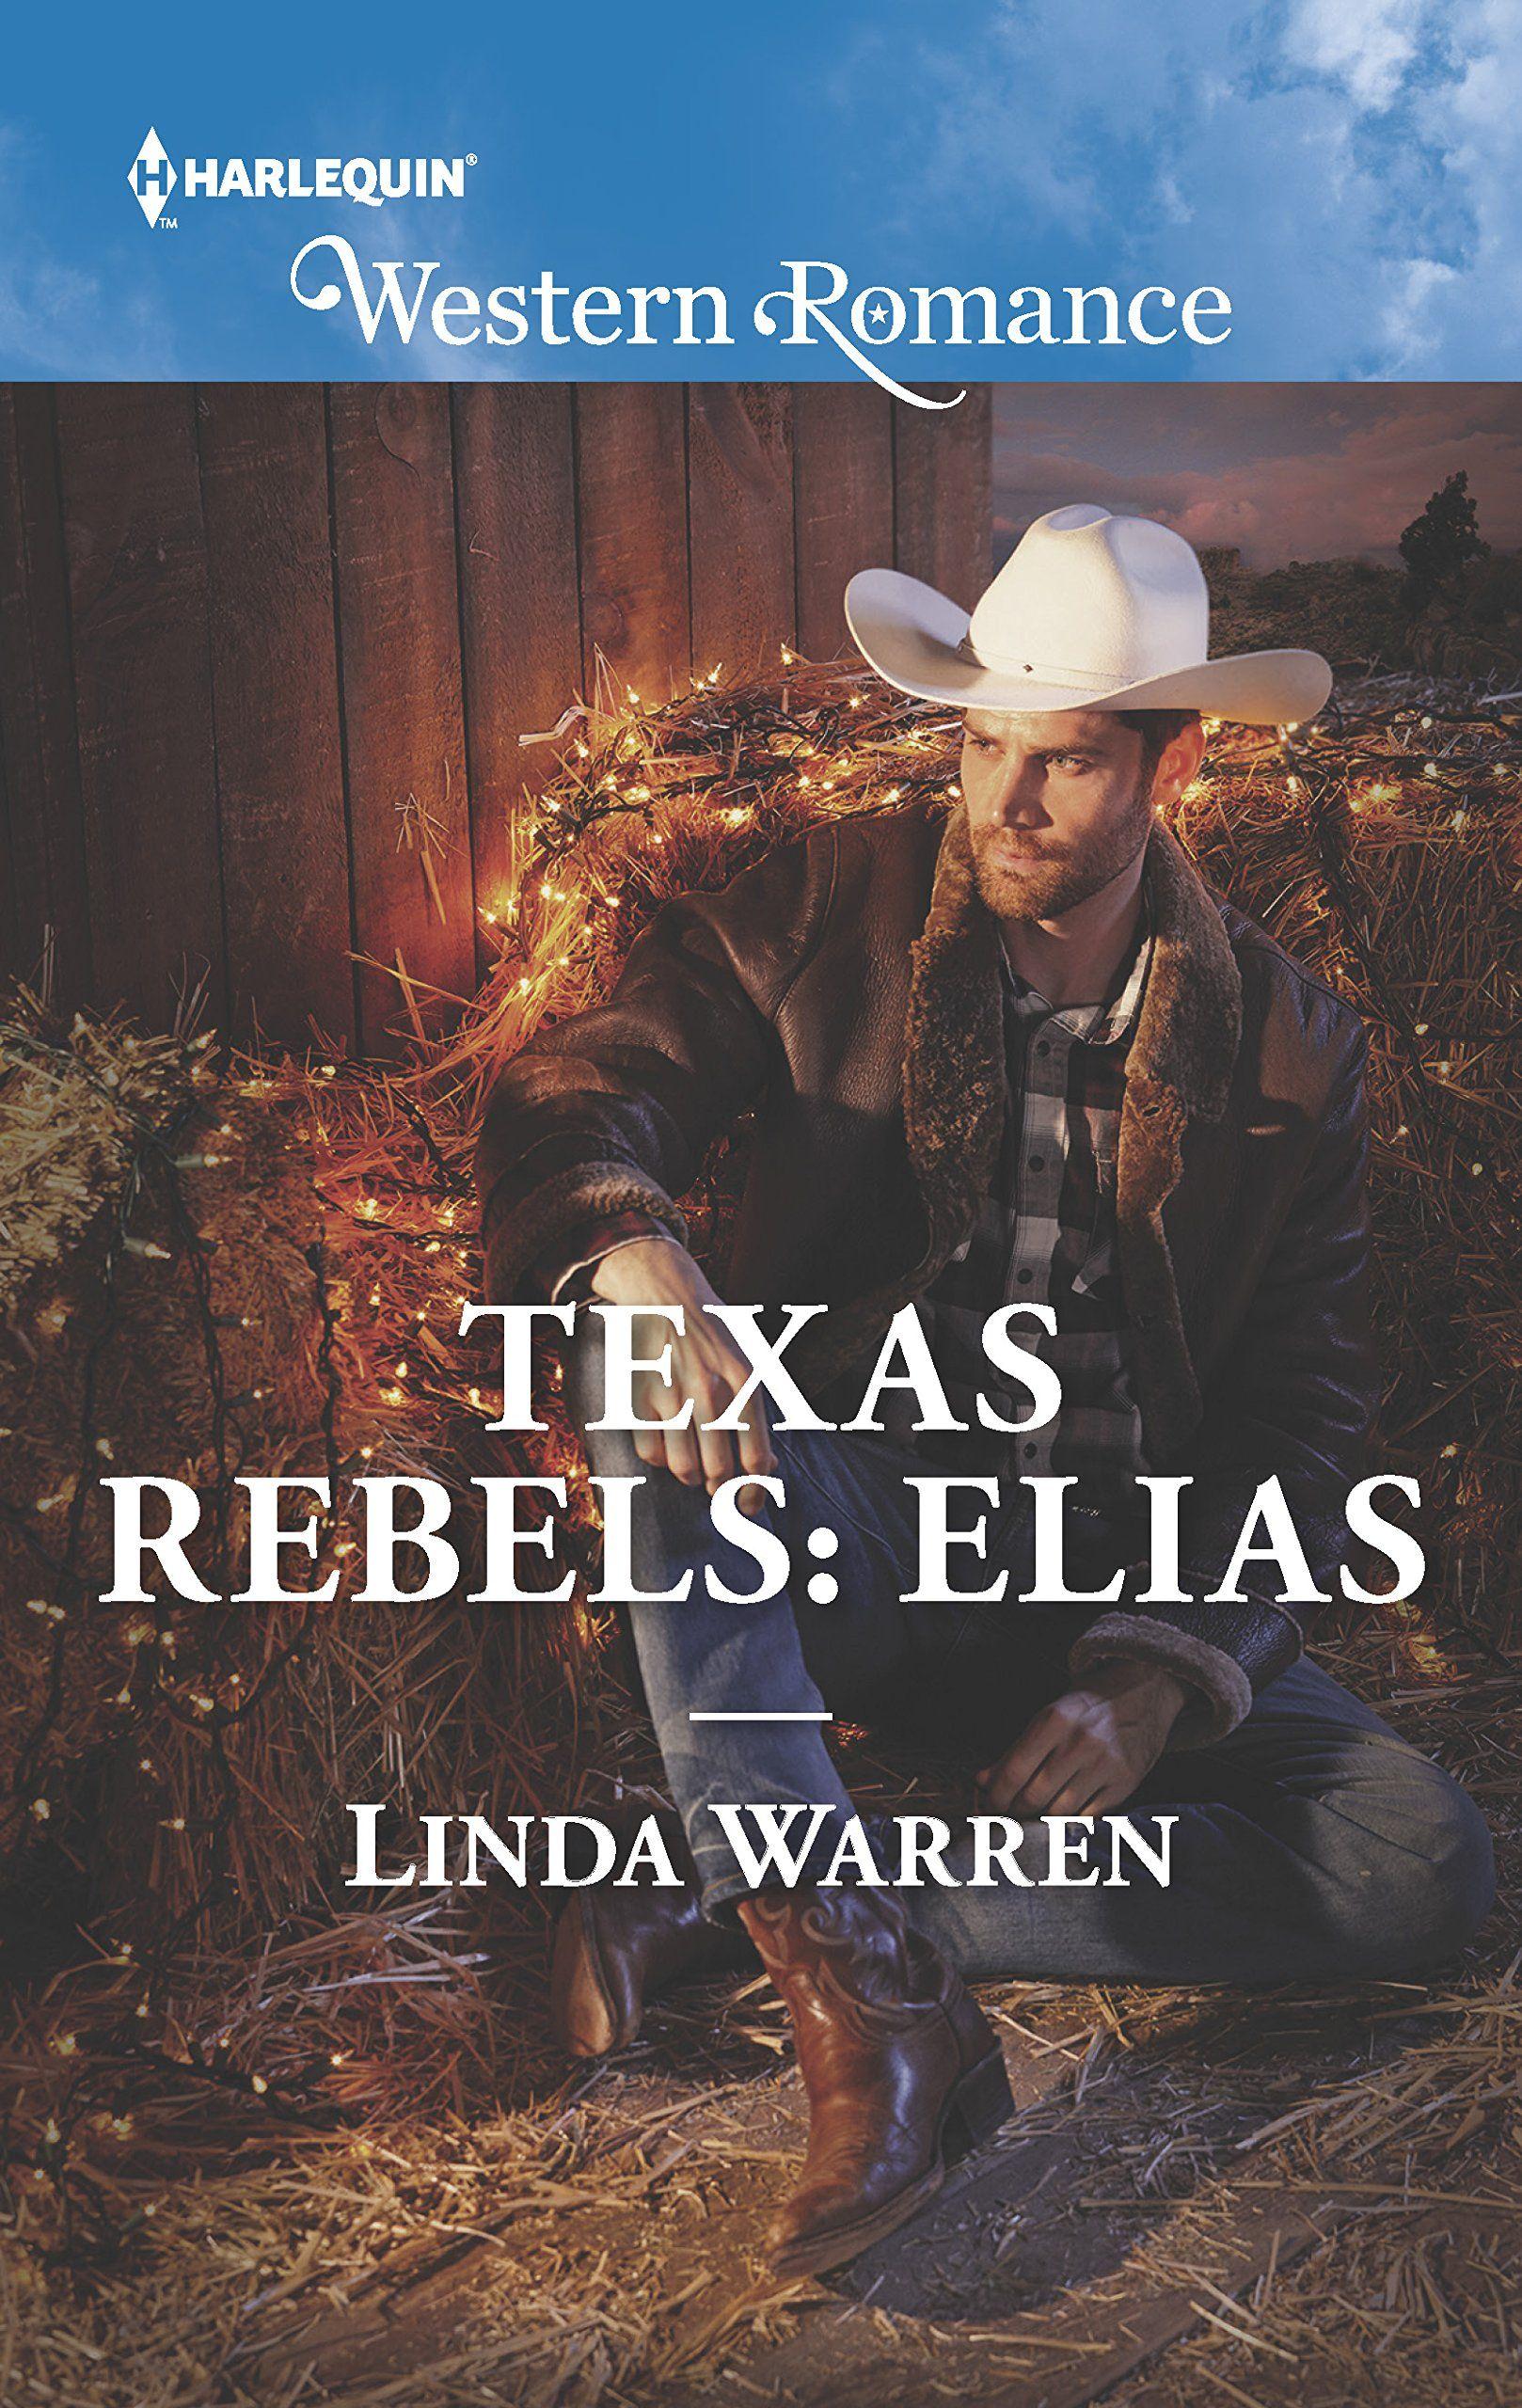 Texas Rebels Logo - Amazon.com: Texas Rebels: Elias (9780373757862): Linda Warren: Books